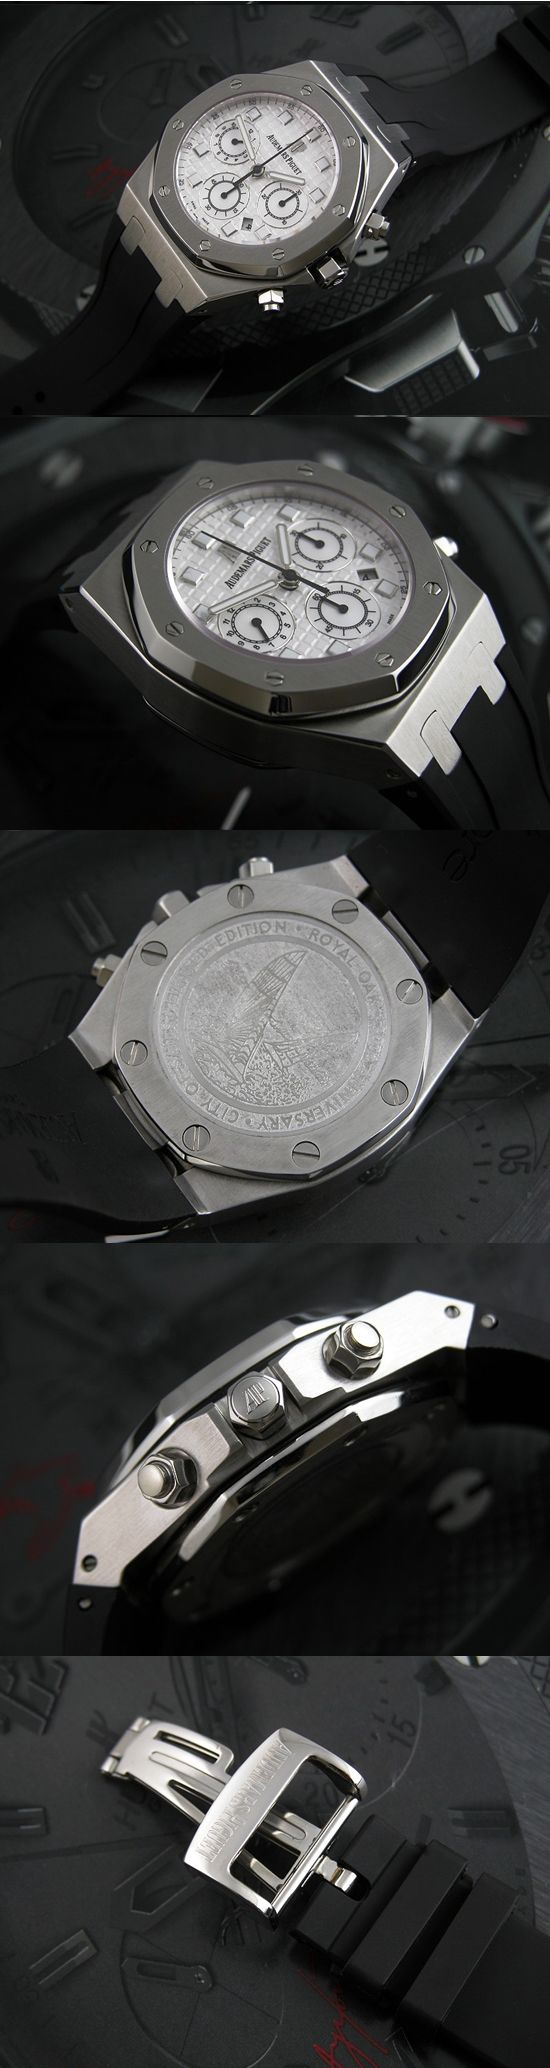 おしゃれなブランド時計がオーデマピゲ-ロイヤルオーク-AUDEMARS PIGUET-AP00004A-男性用を提供します.